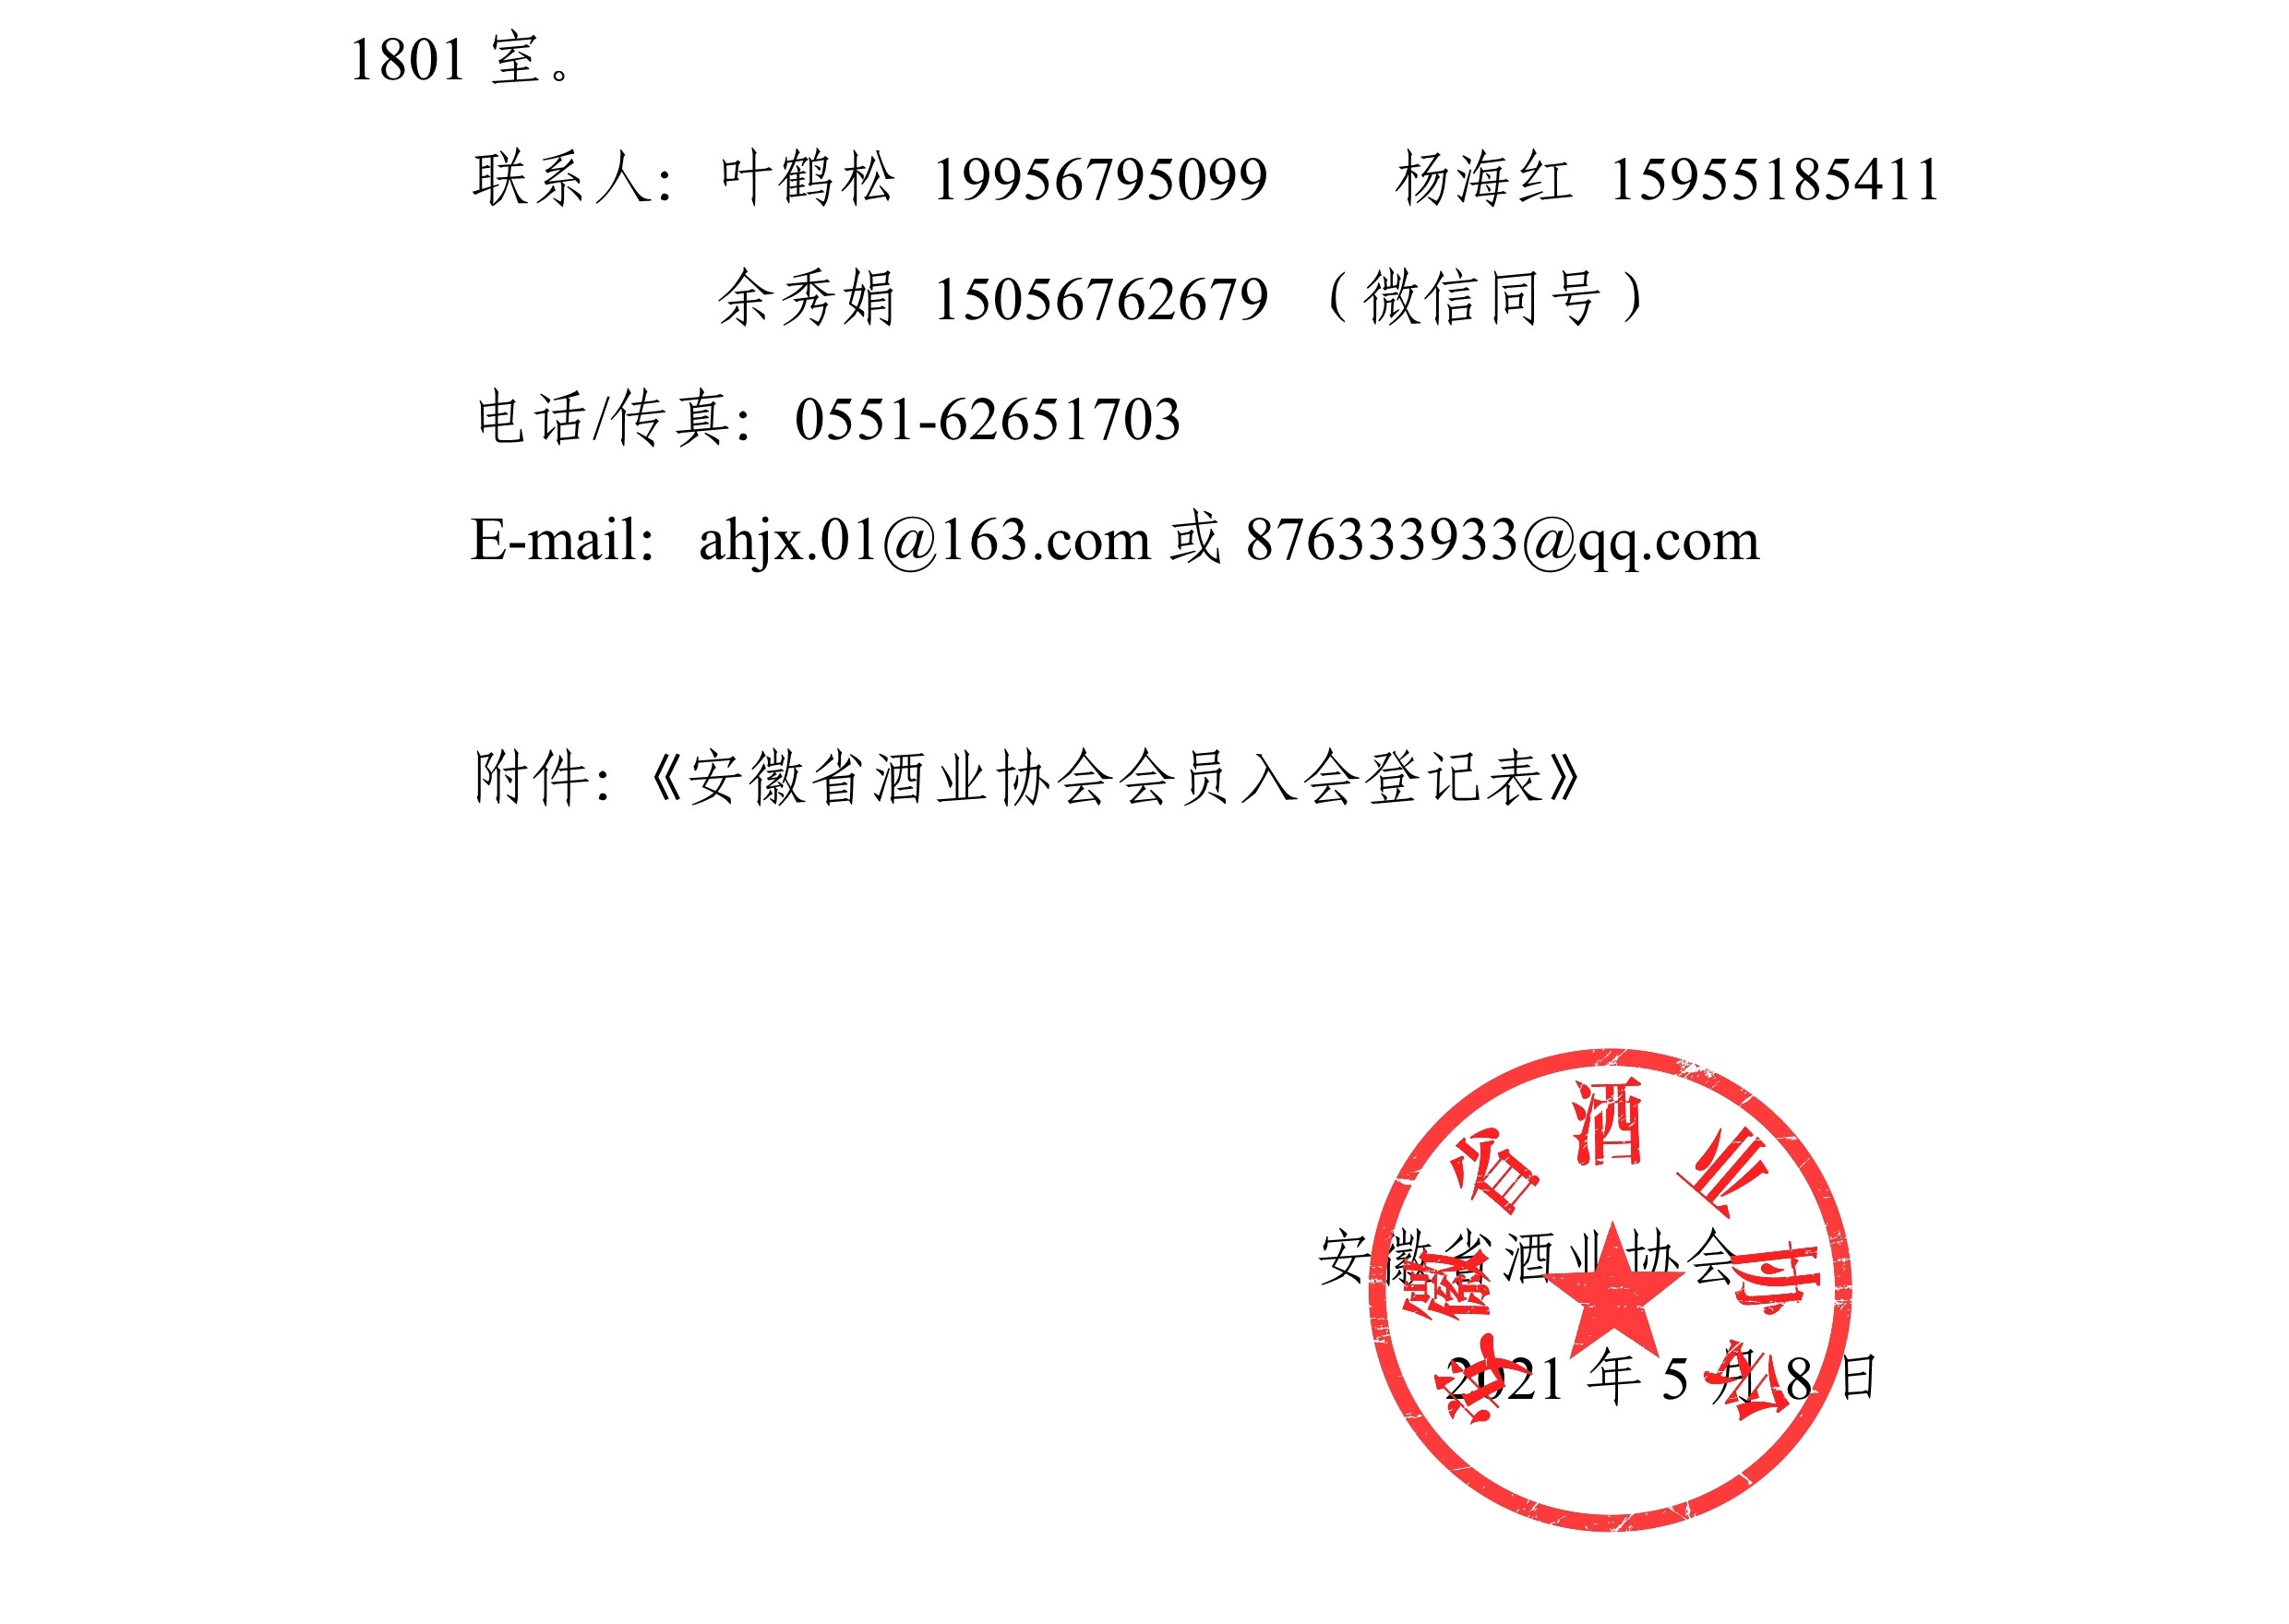 关于诚邀加入安徽省酒业协会的函-2